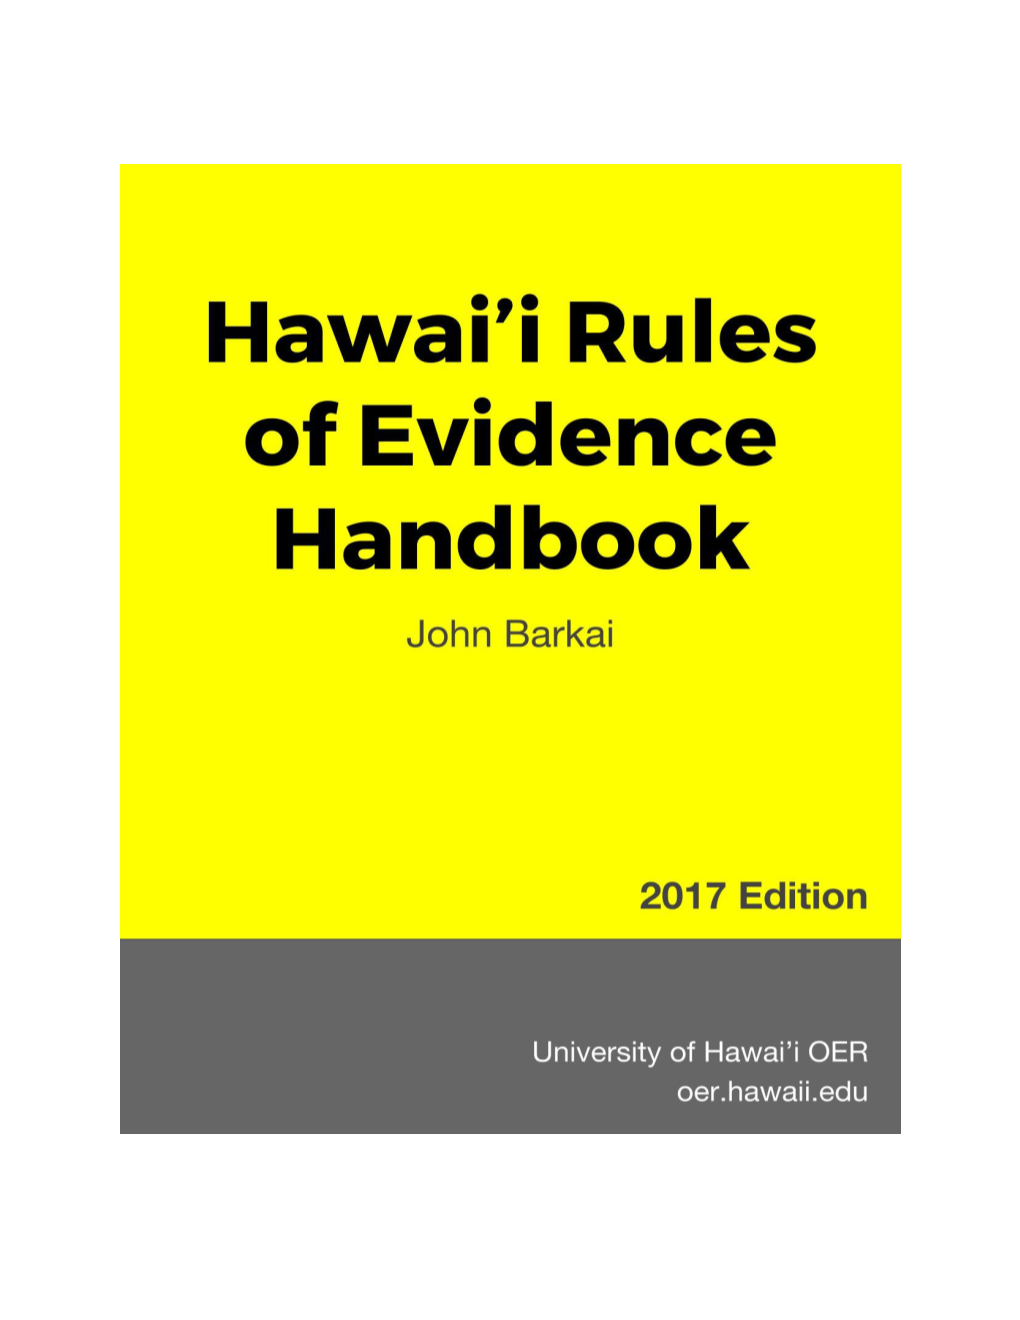 Hawaii Rules of Evidence Handbook